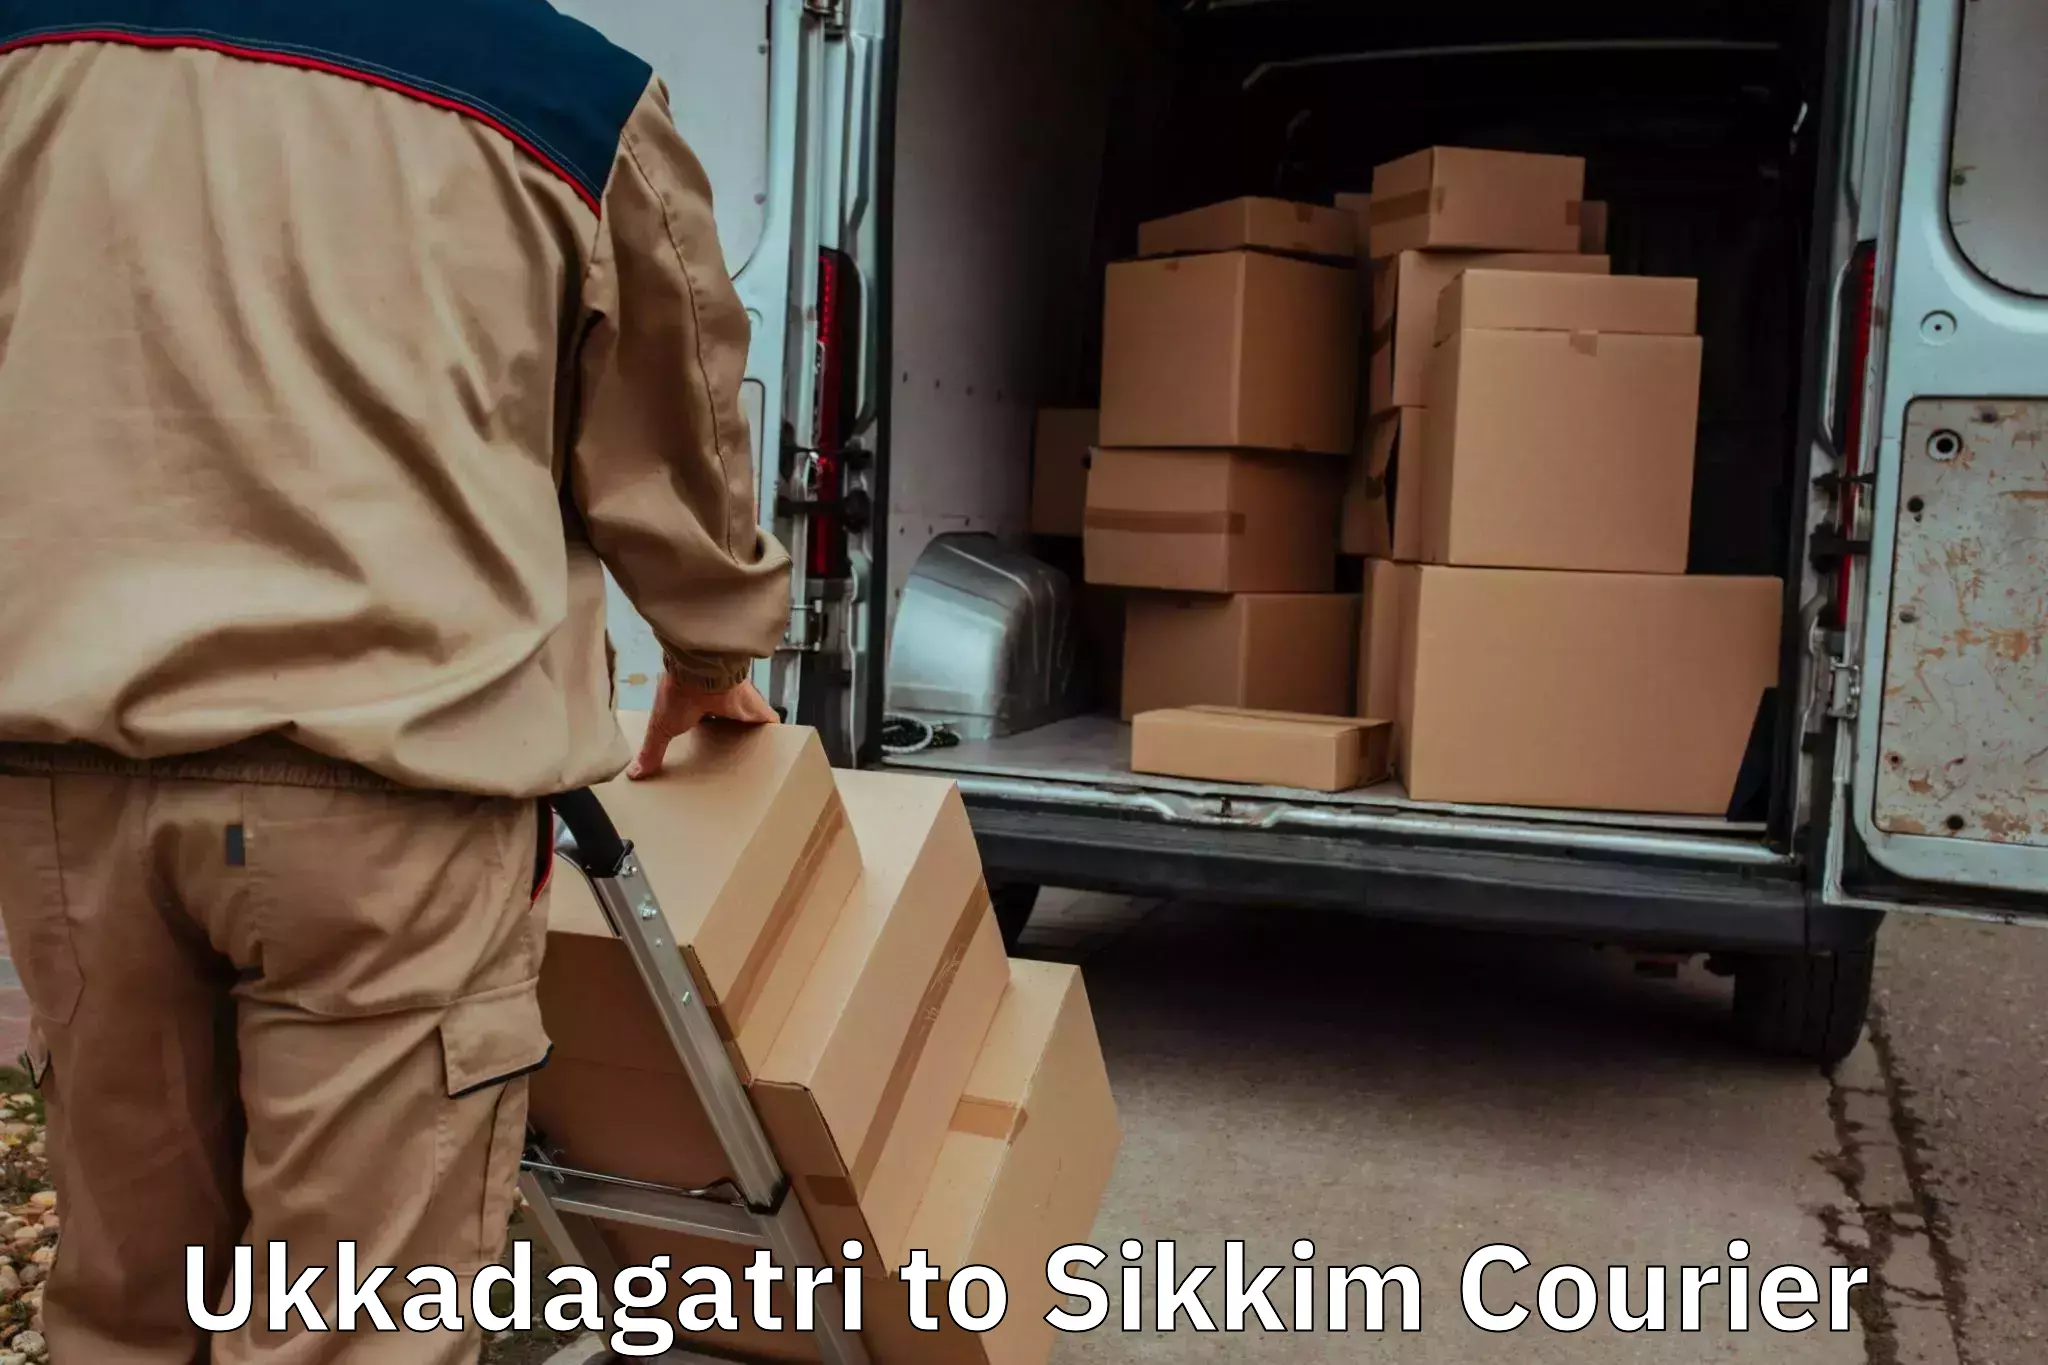 Home moving experts Ukkadagatri to Sikkim